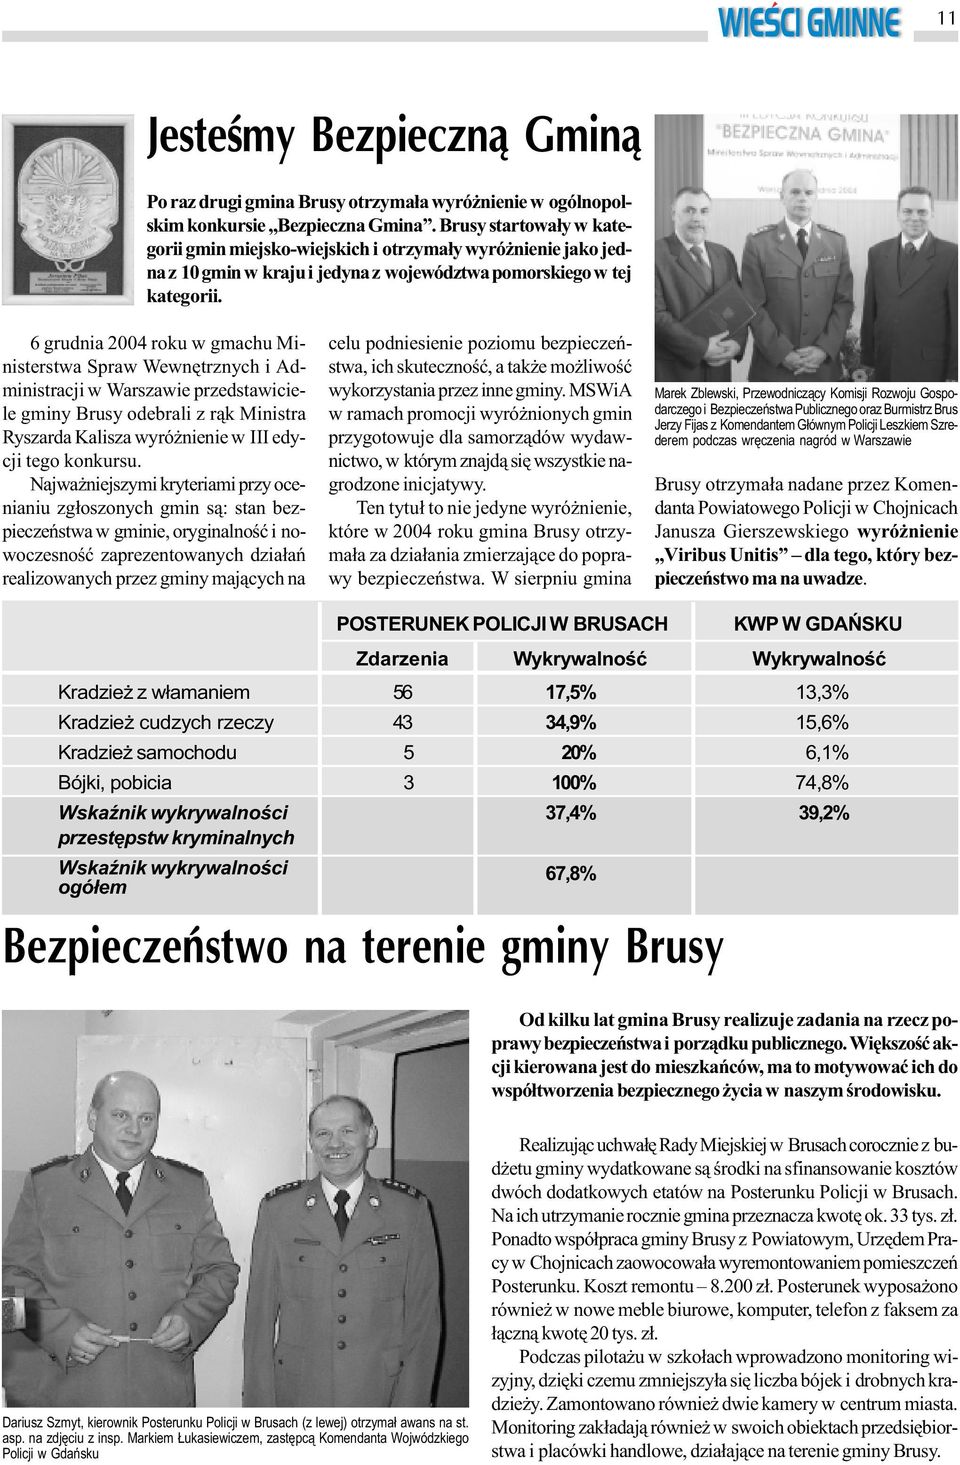 6 grudnia 2004 roku w gmachu Ministerstwa Spraw Wewnêtrznych i Administracji w Warszawie przedstawiciele gminy Brusy odebrali z r¹k Ministra Ryszarda Kalisza wyró nienie w III edycji tego konkursu.